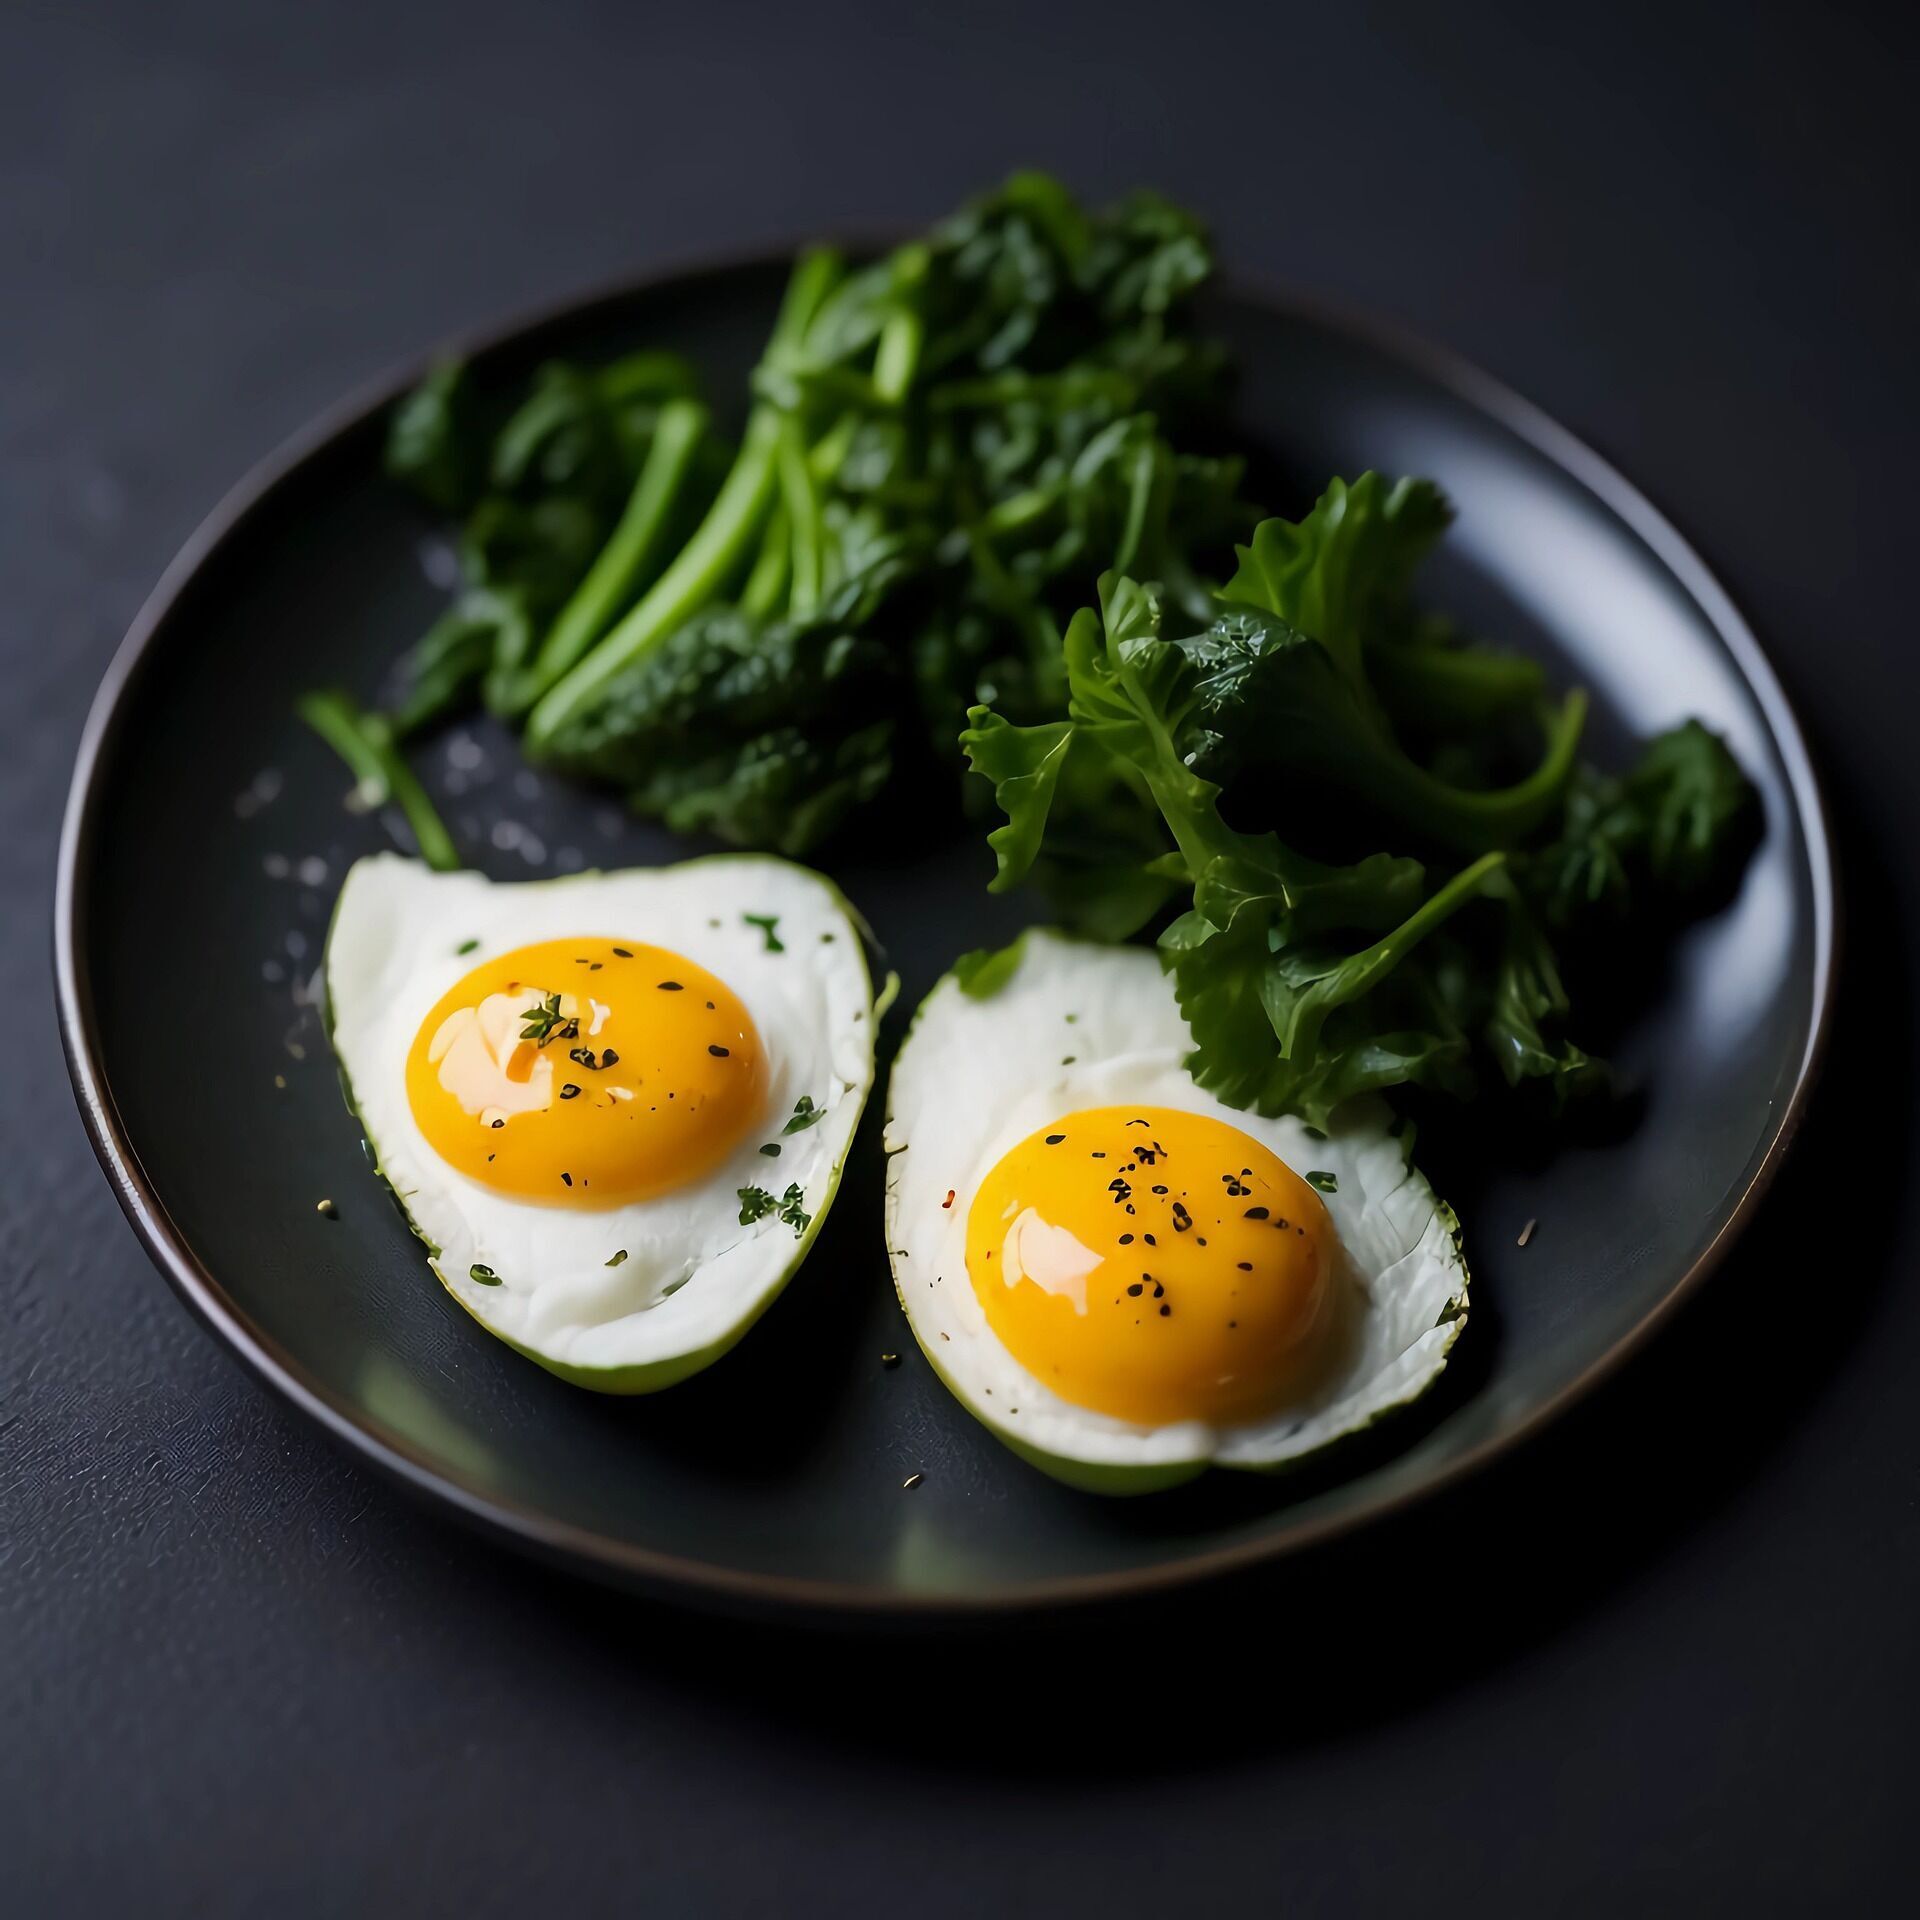 Как правильно готовить яйца: 4 простых варианта блюд для идеального завтрака